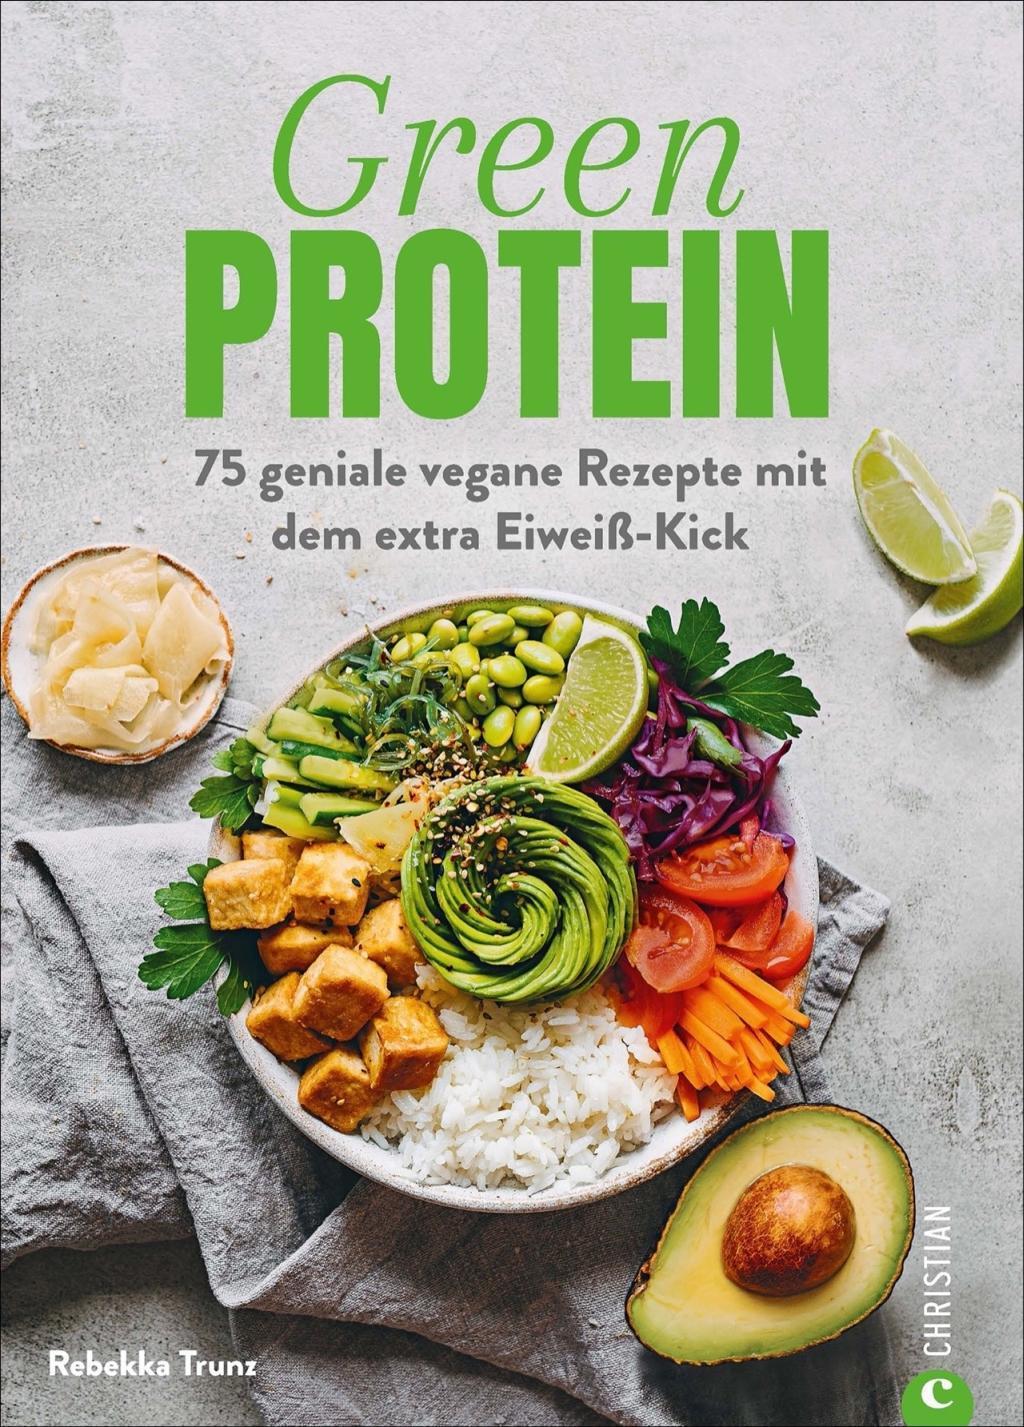 Bild studentische Arbeit: Kochbuch ‚Green Protein‘ von Rebekka Trunz, erschienen 2018